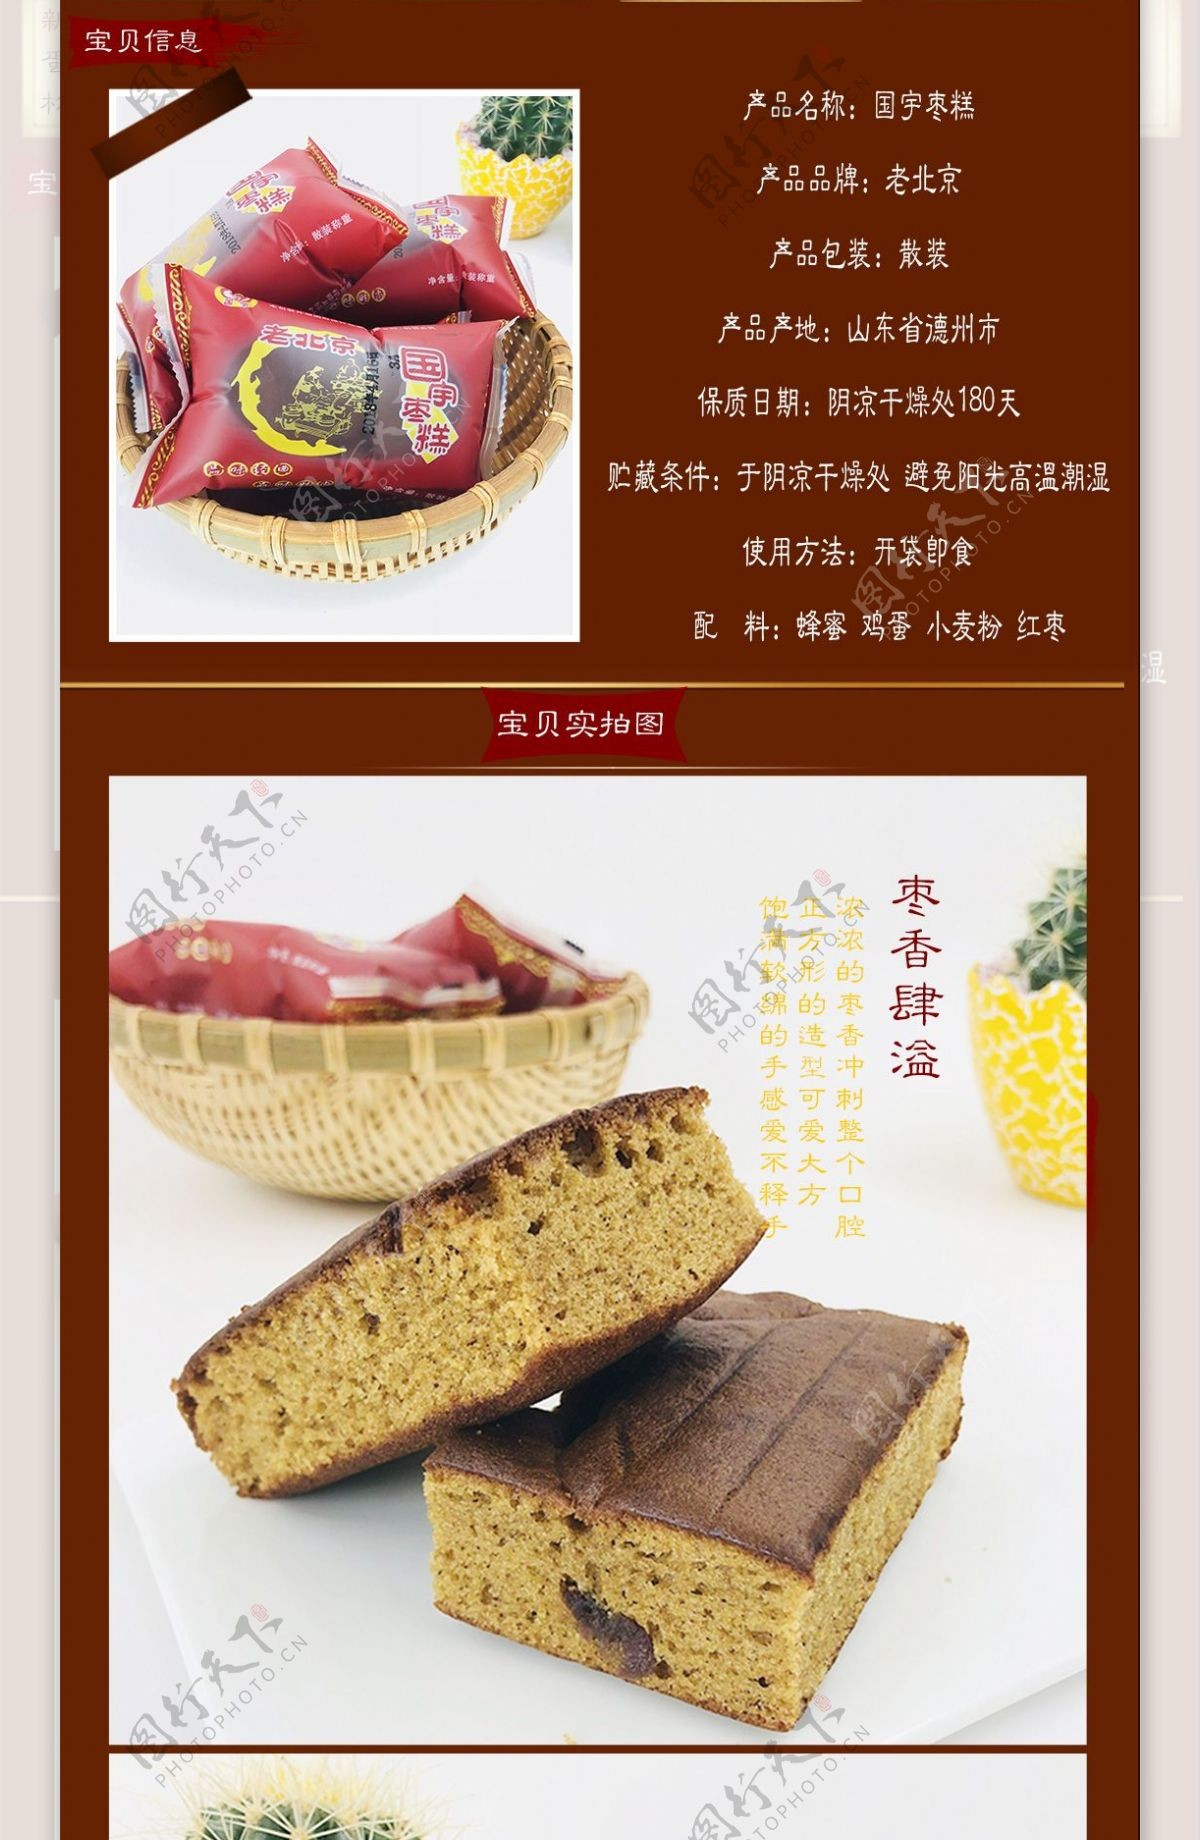 枣糕国宇食品详情页